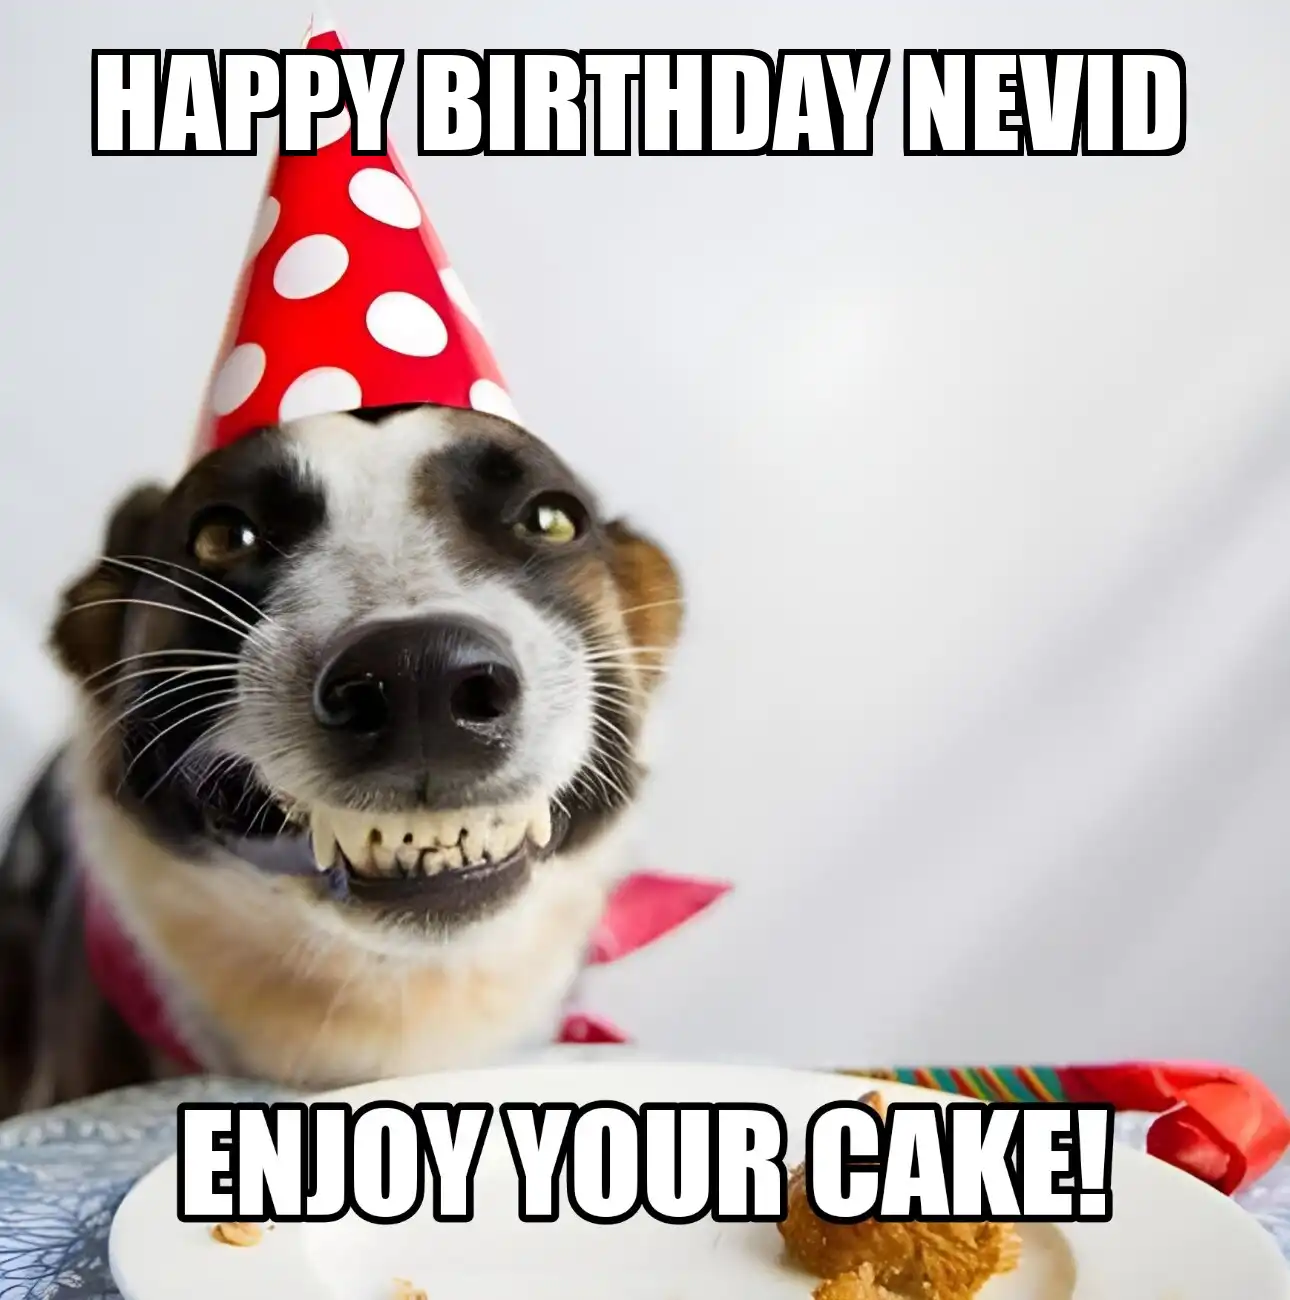 Happy Birthday Nevid Enjoy Your Cake Dog Meme